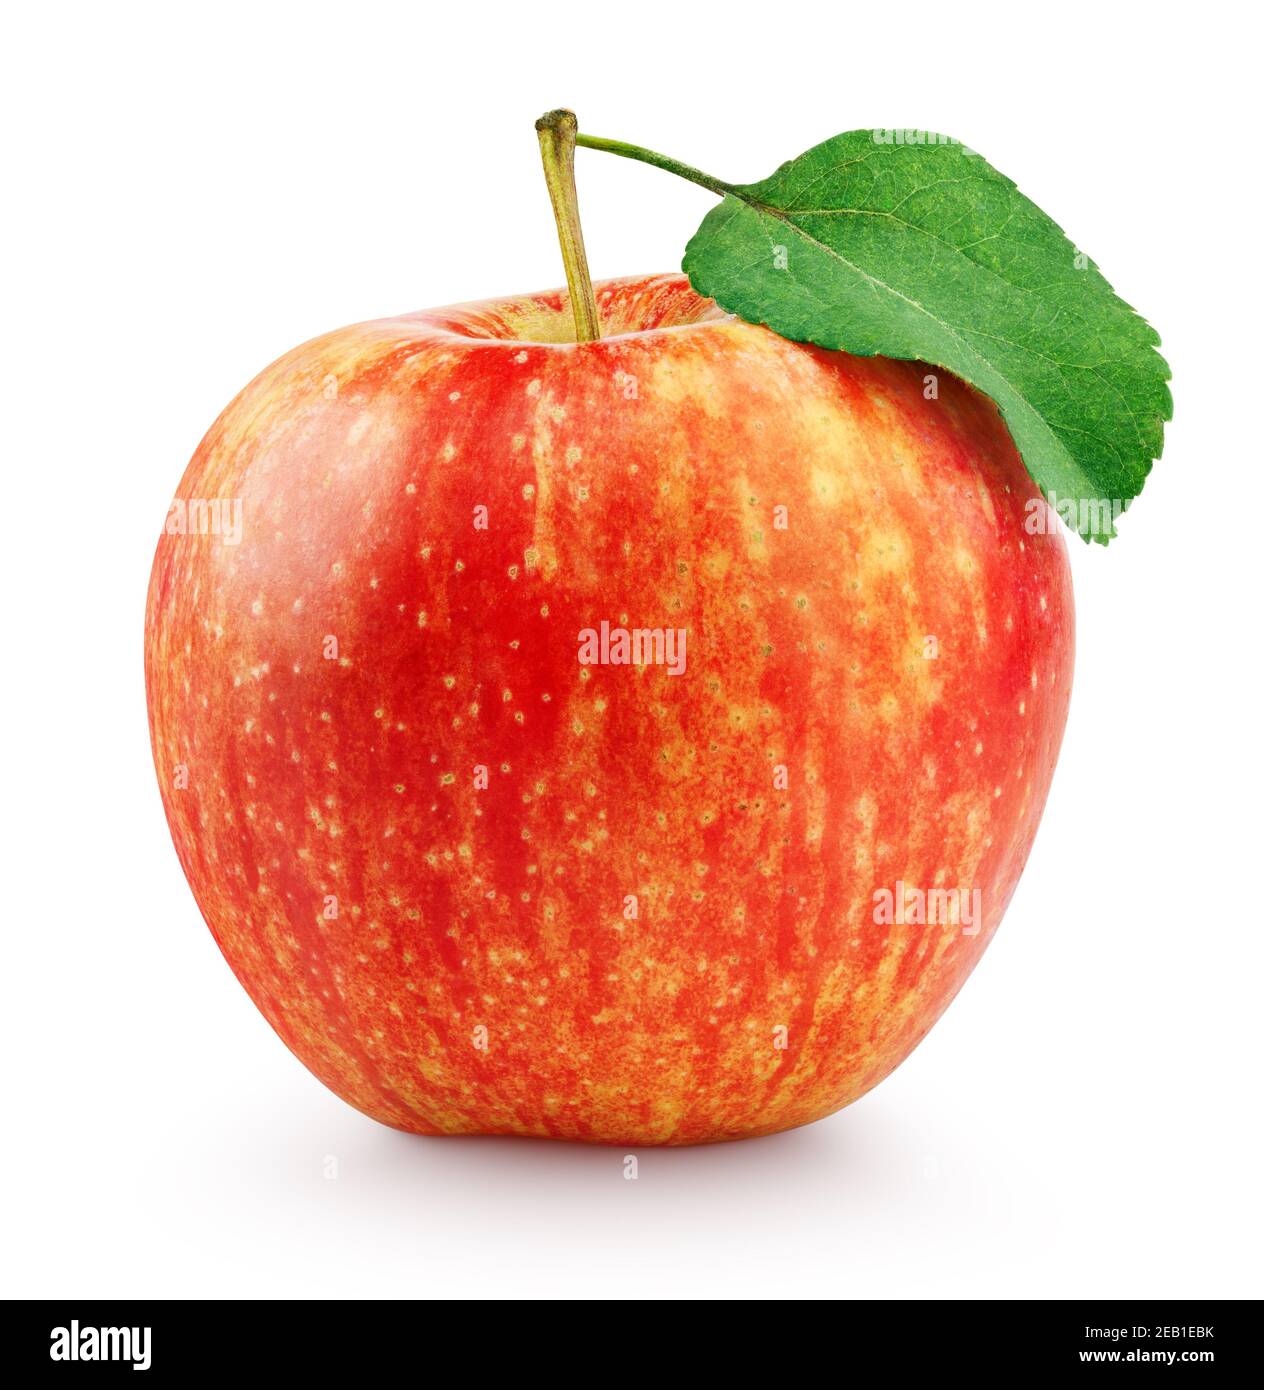 Singola mela gialla rossa matura con foglia verde isolata sfondo bianco con tracciato di ritaglio Foto Stock